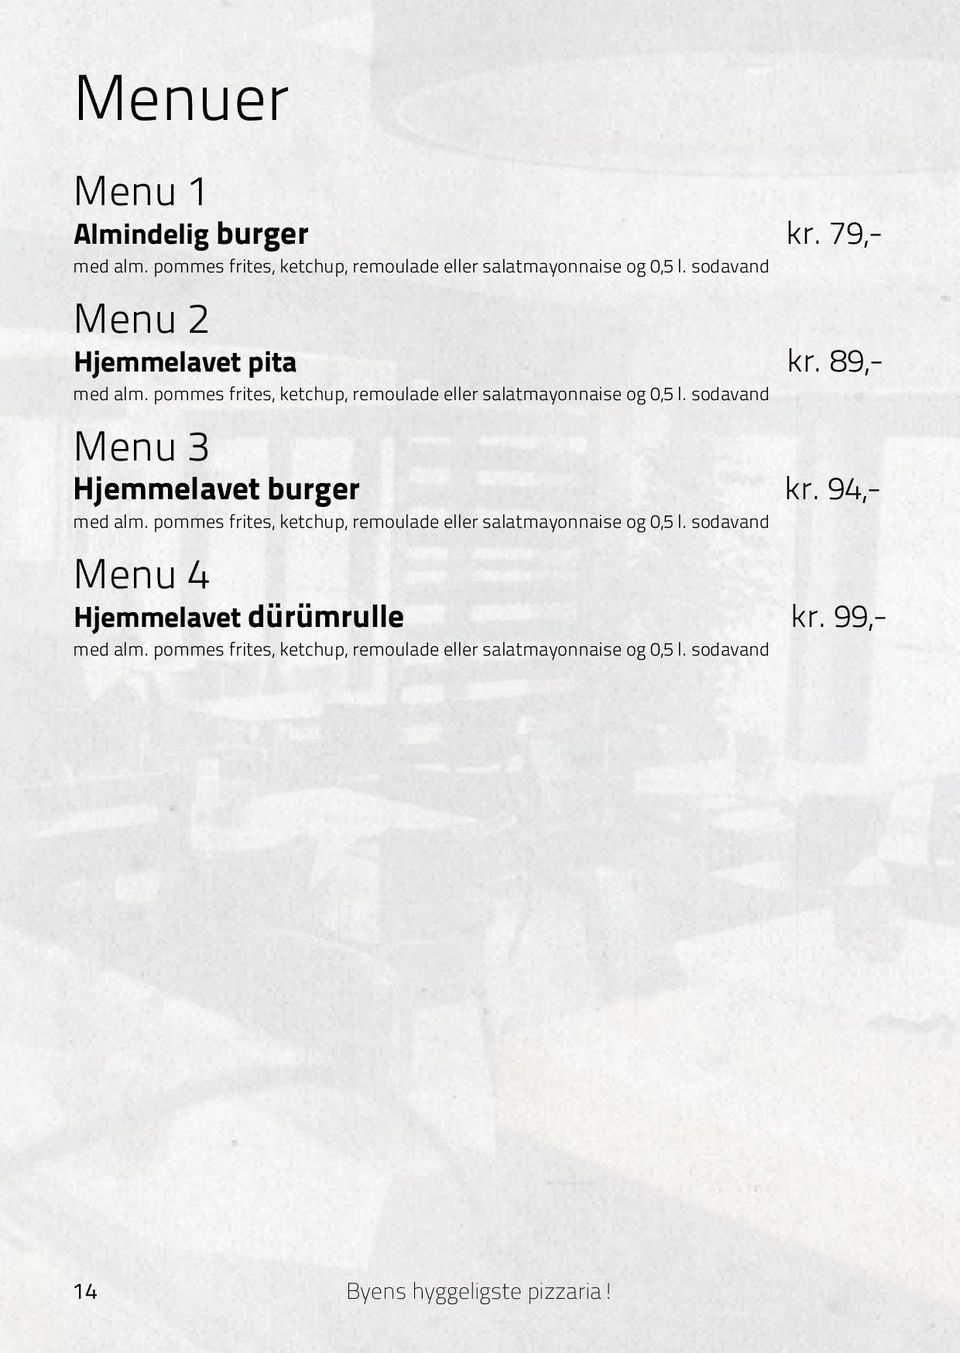 sodavand Menu 3 Hjemmelavet burger kr. 94,- med alm. pommes frites, ketchup, remoulade eller salatmayonnaise og 0,5 l.